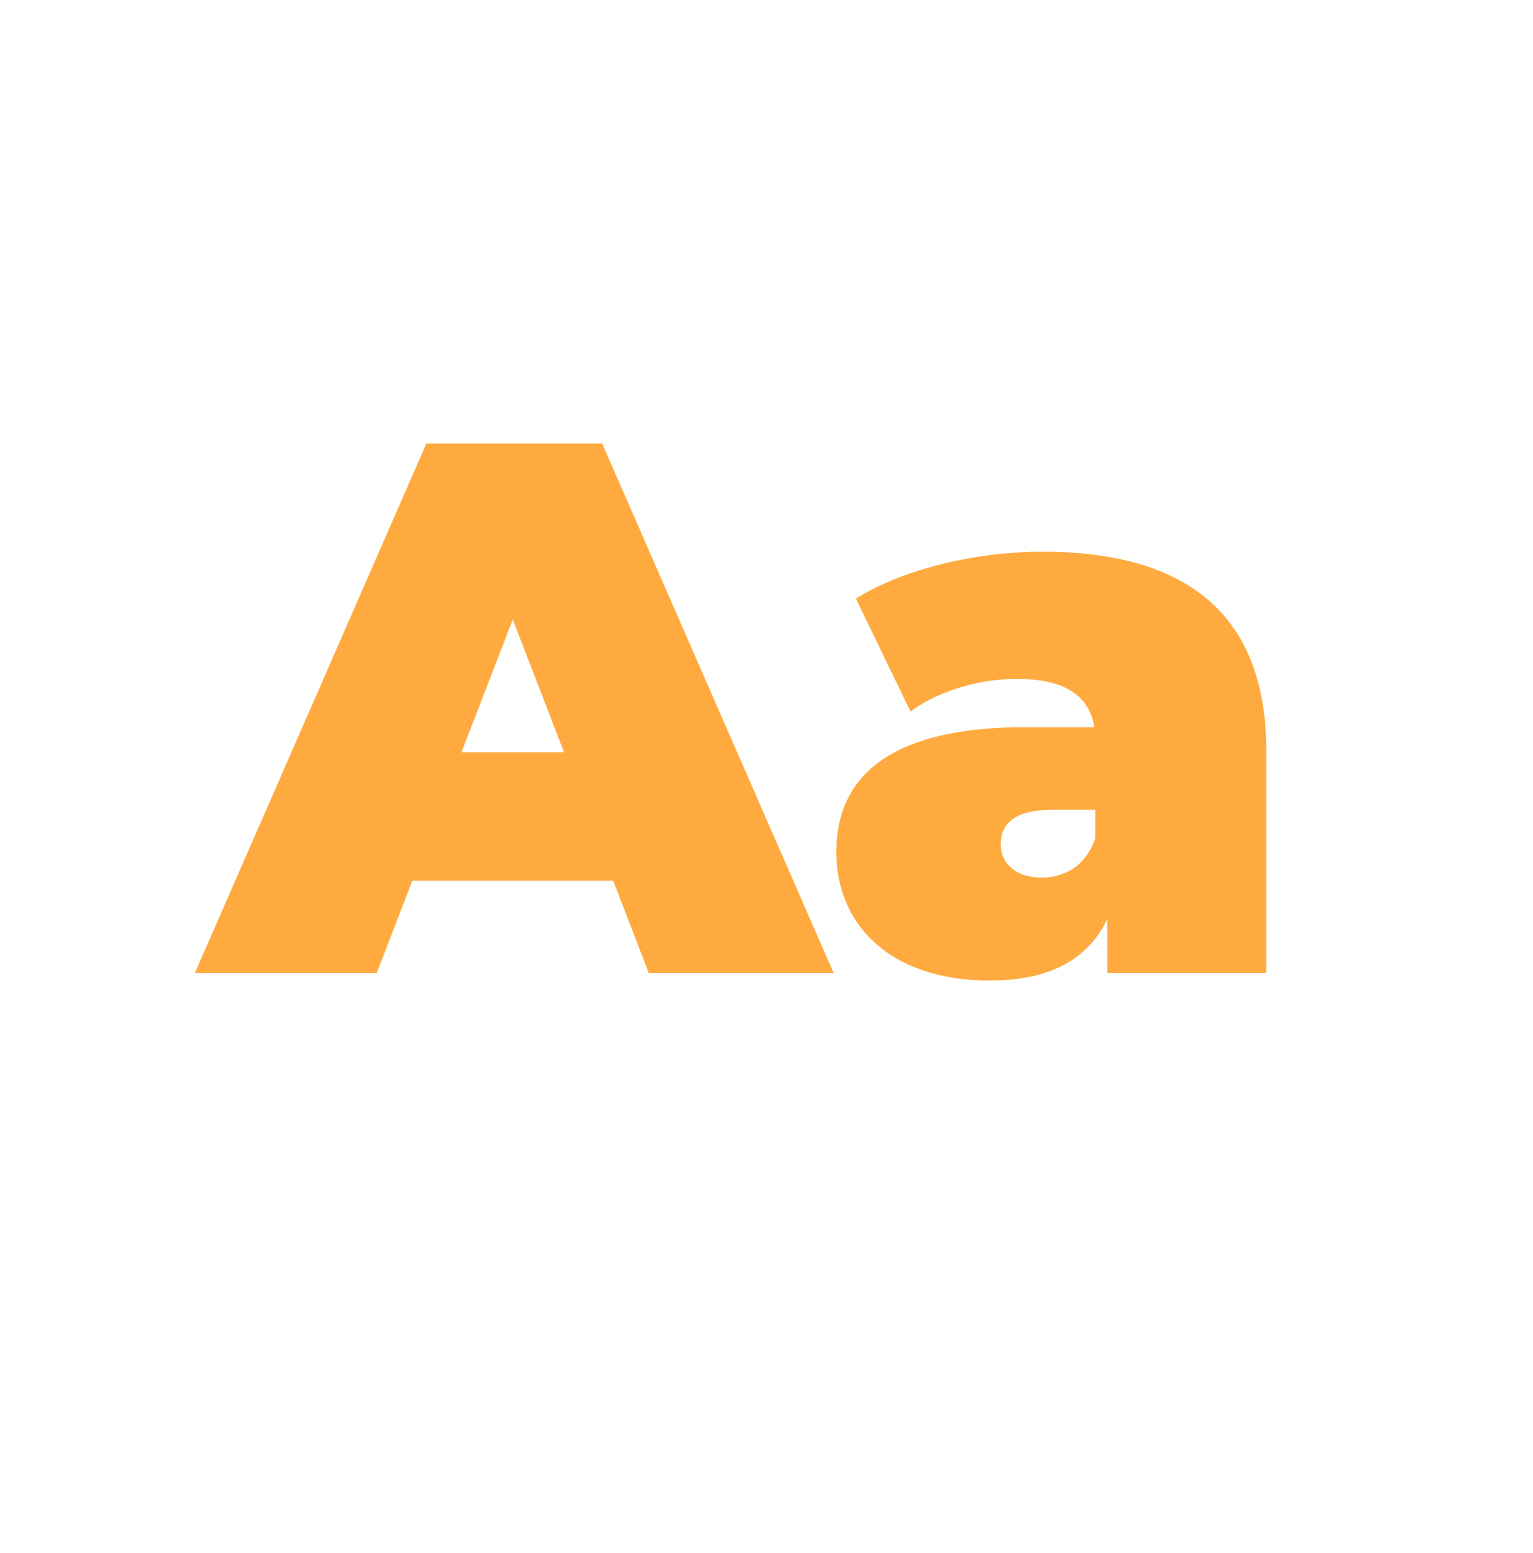 The letter "A" in Montserrat Black font.